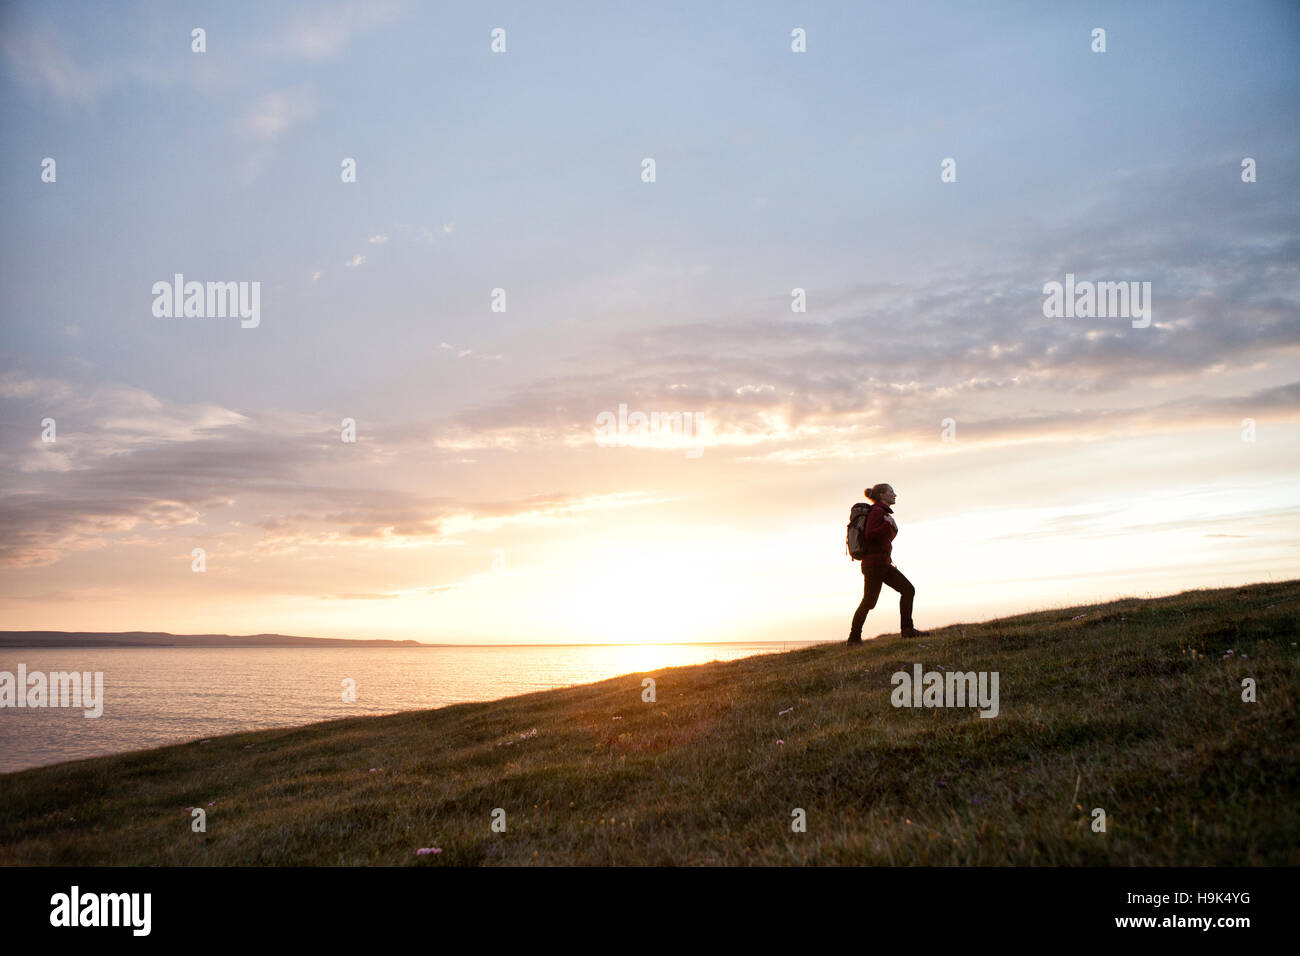 Island, Frau Wandern auf einem Hügel in der Dämmerung Stockfoto